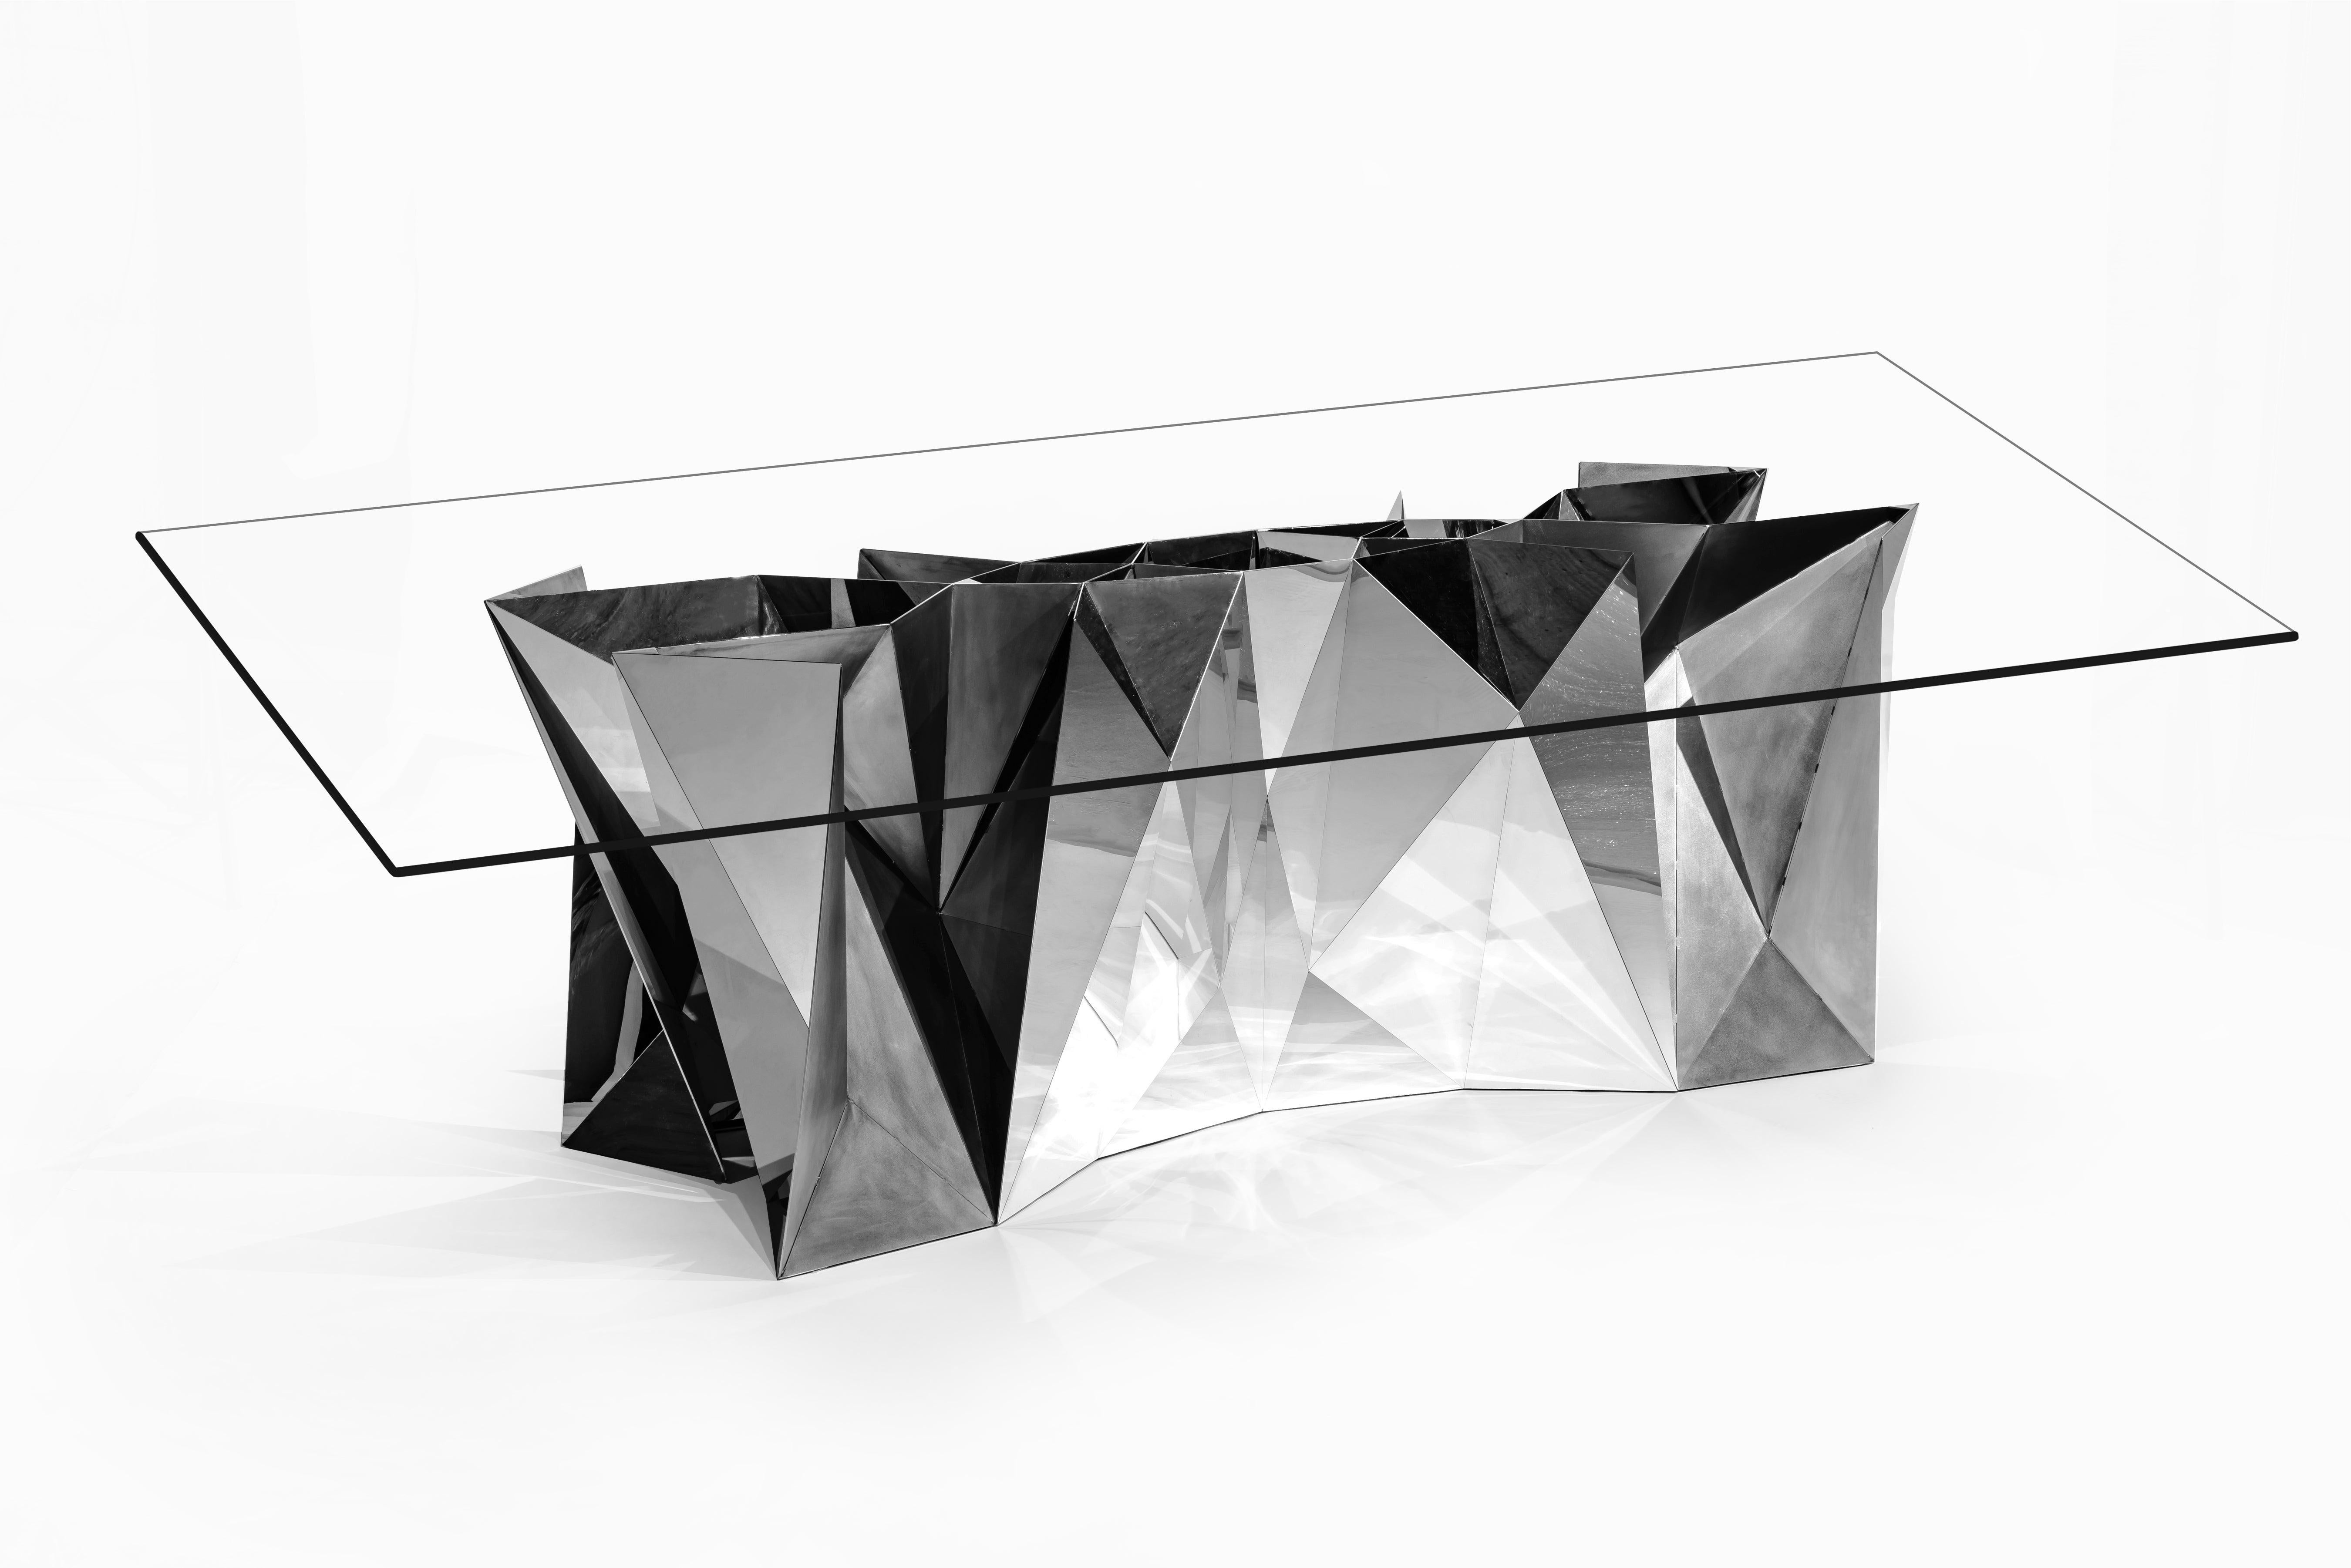 Dieser elegant gestaltete Tisch wurde in digitaler Handarbeit hergestellt, mit denselben Fertigungstechniken, die in Zhoujies digitalem Labor entwickelt wurden. Die digitalen Wurzeln des Werks verleihen ihm eine architektonische und minimale